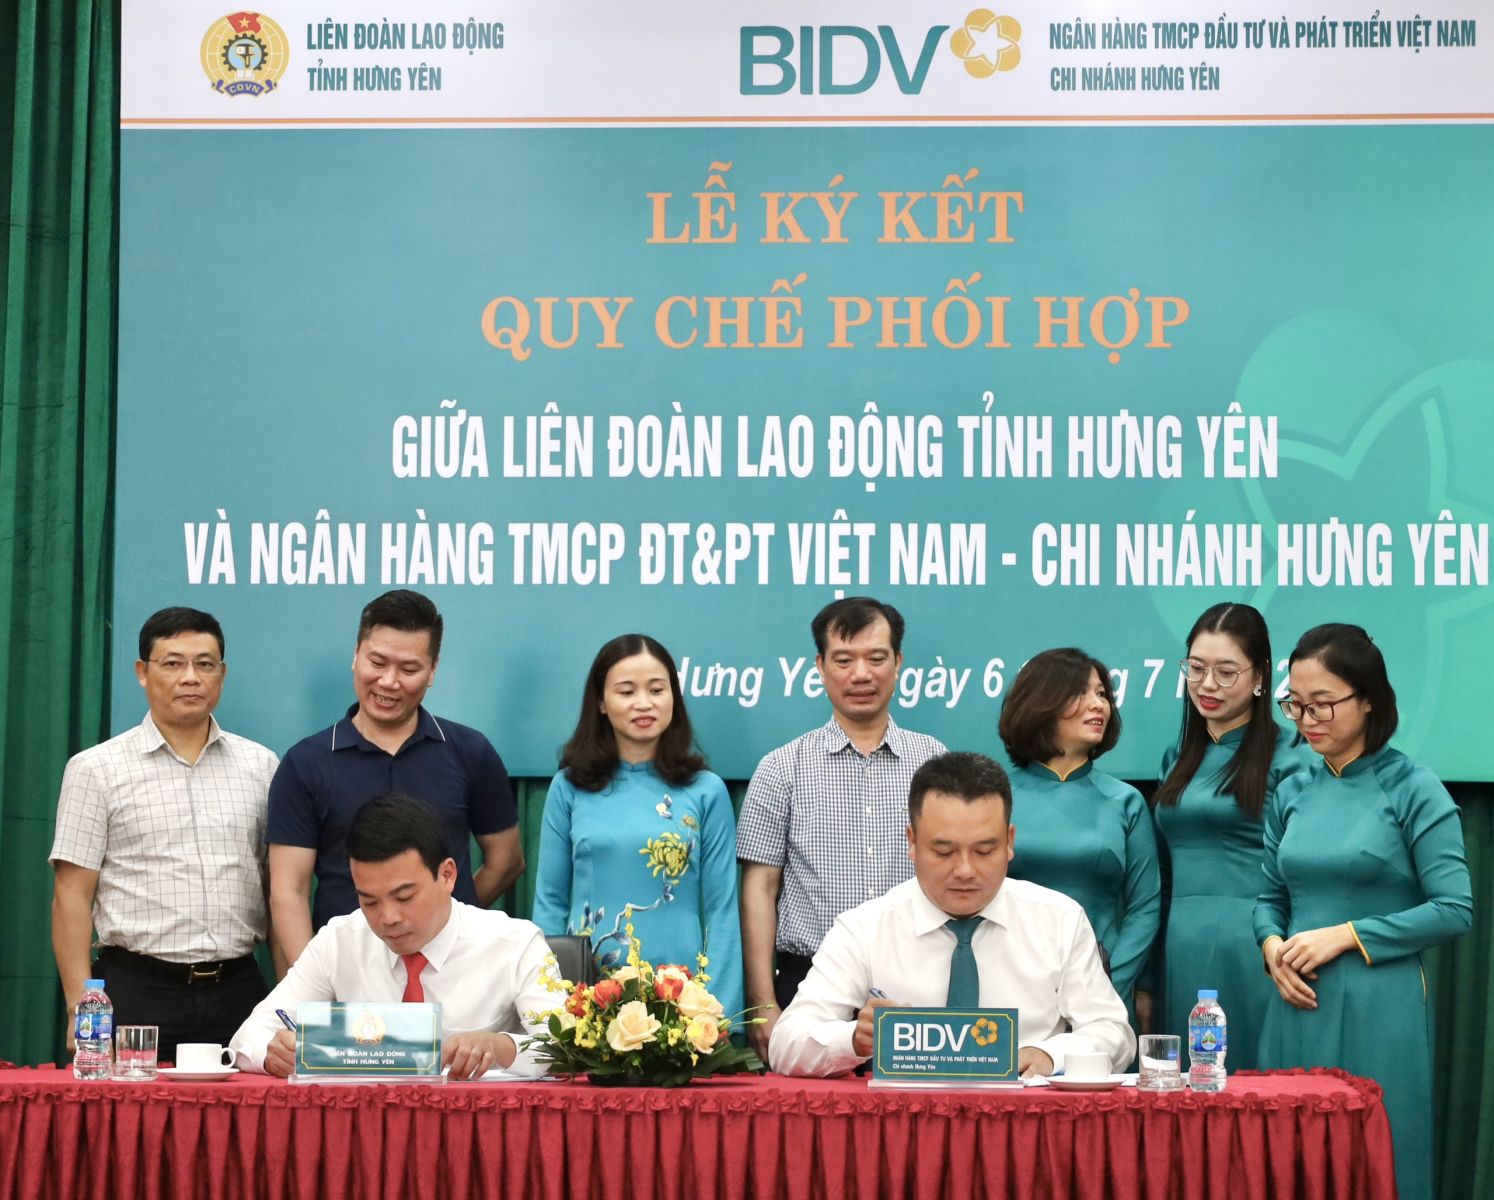 Ký kết quy chế phối hợp giữa Liên đoàn Lao động tỉnh và Ngân hàng Thương mại cổ phần Đầu tư và phát triển Việt Nam (BIDV) – Chi nhánh Hưng Yên